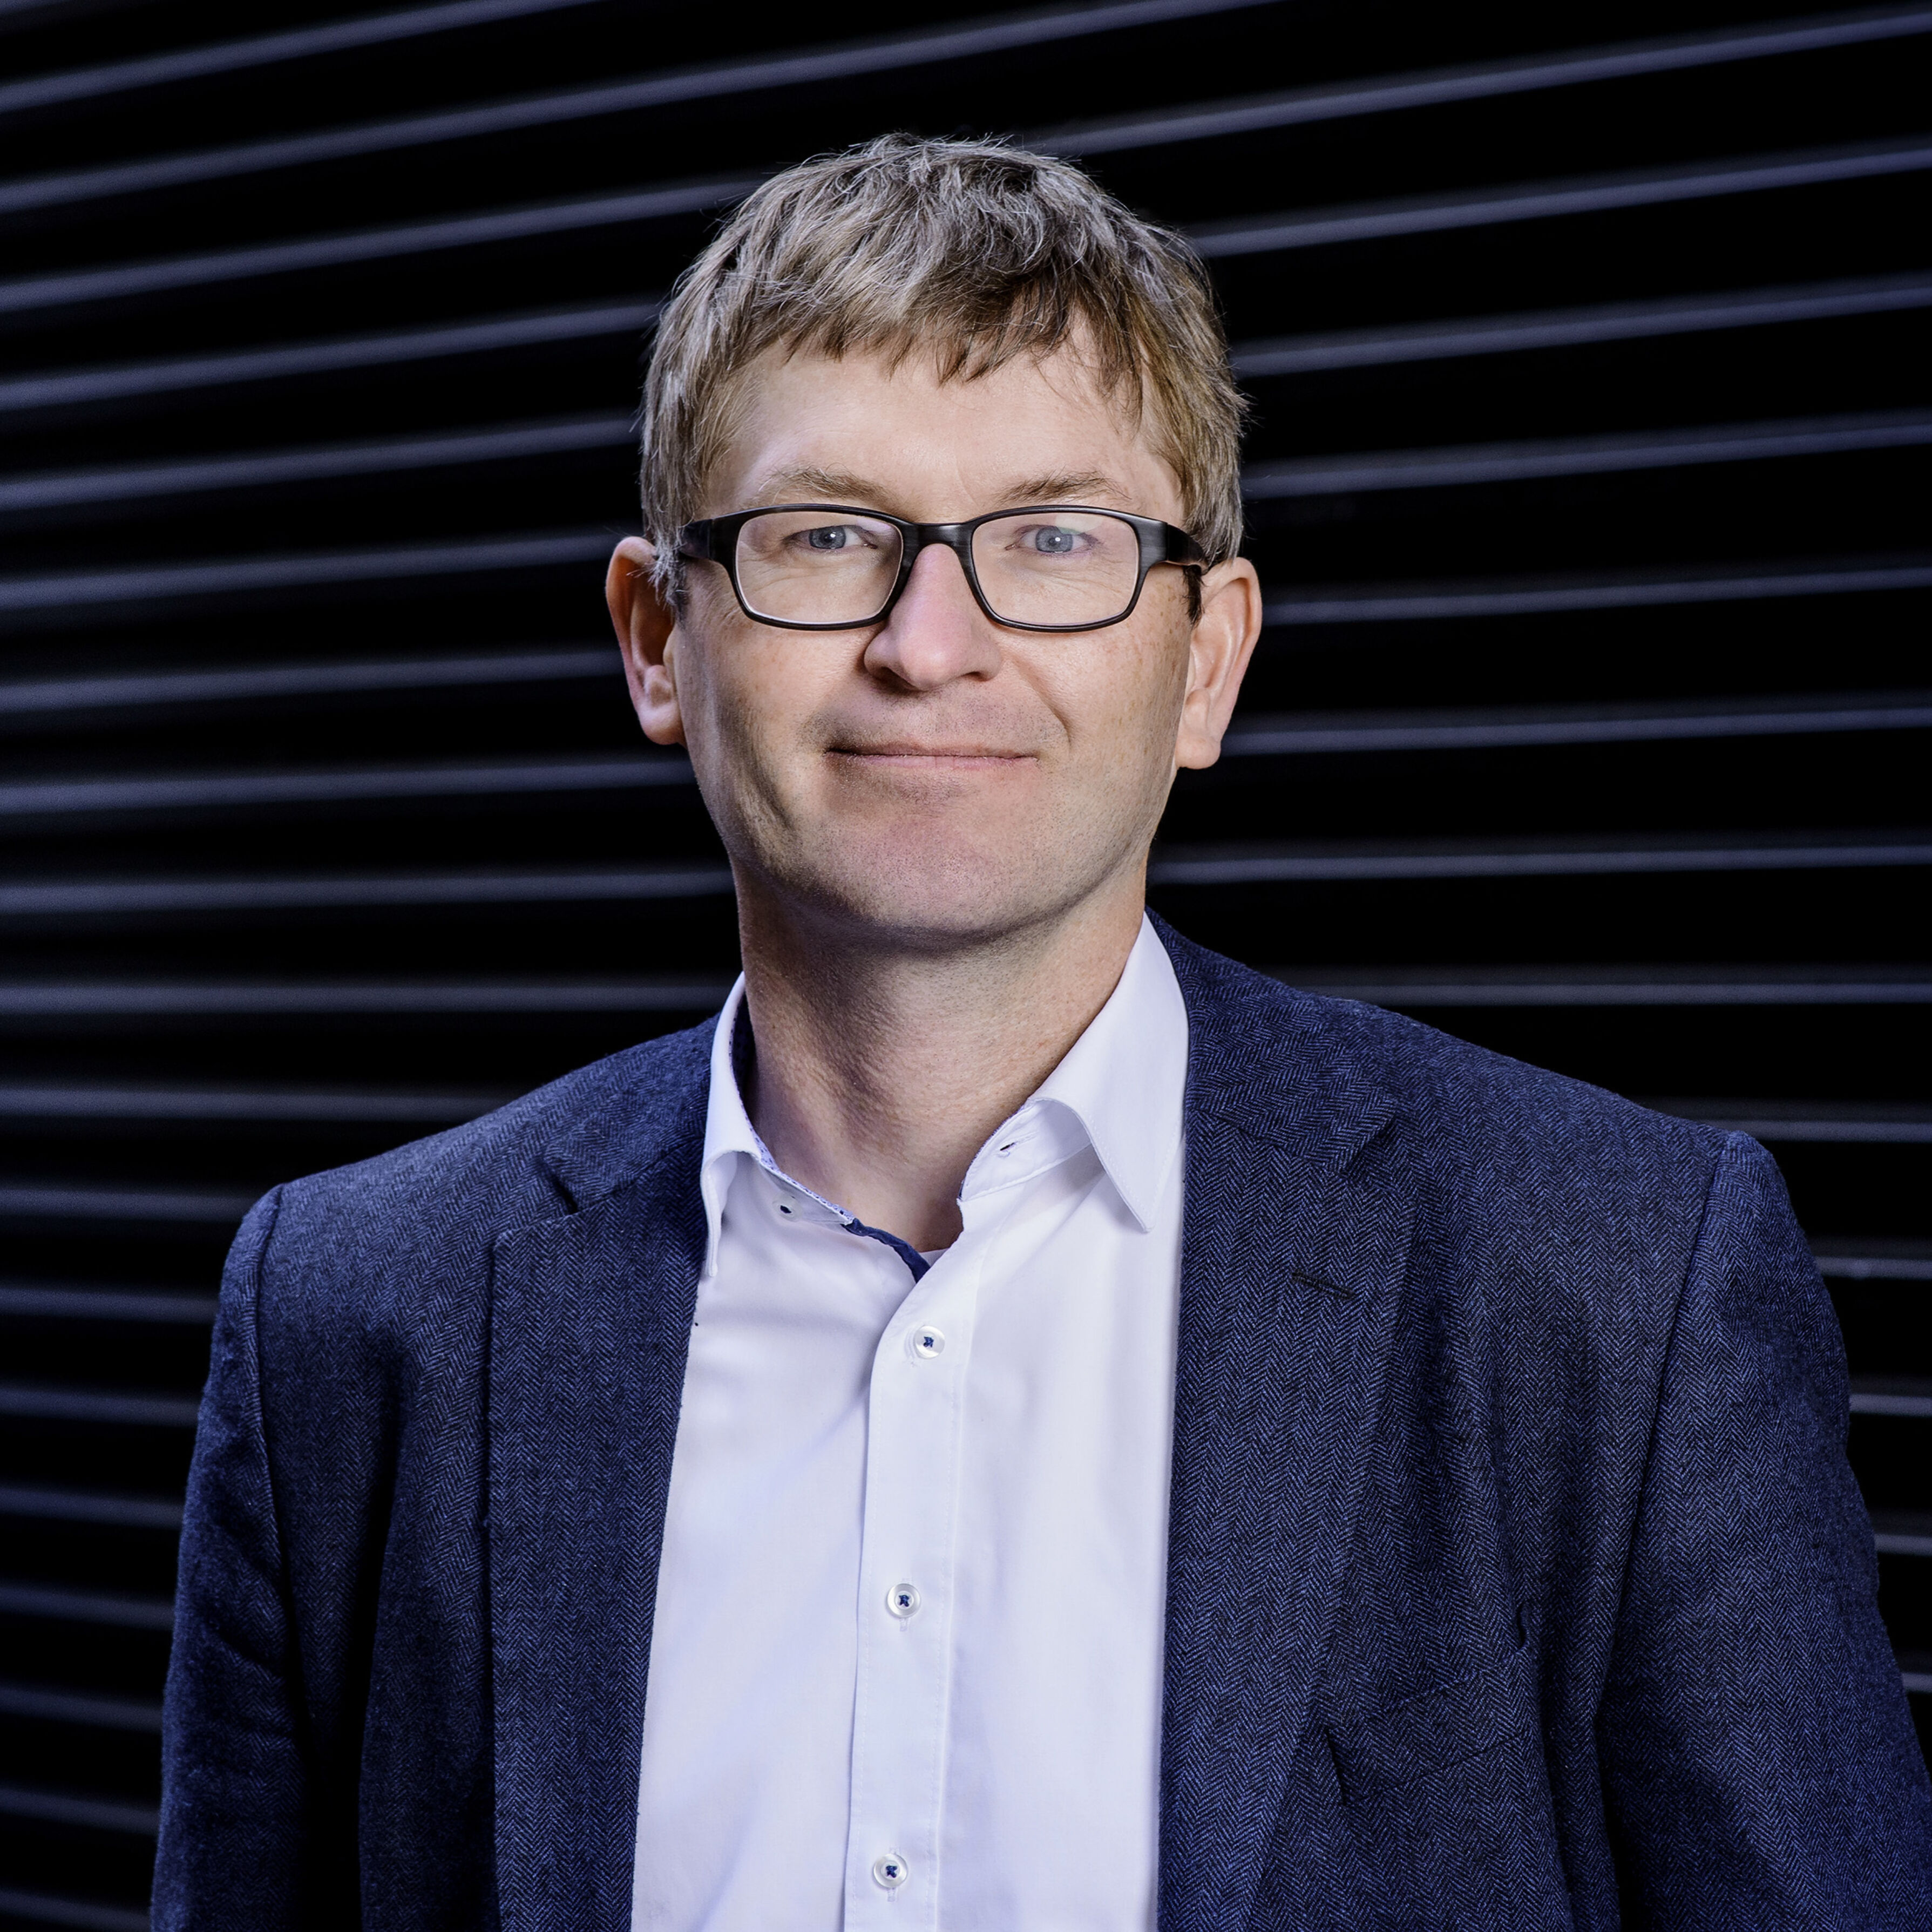 Professor Doctor Helmut Schönenberger. Venture Director for Unternehmer TUM